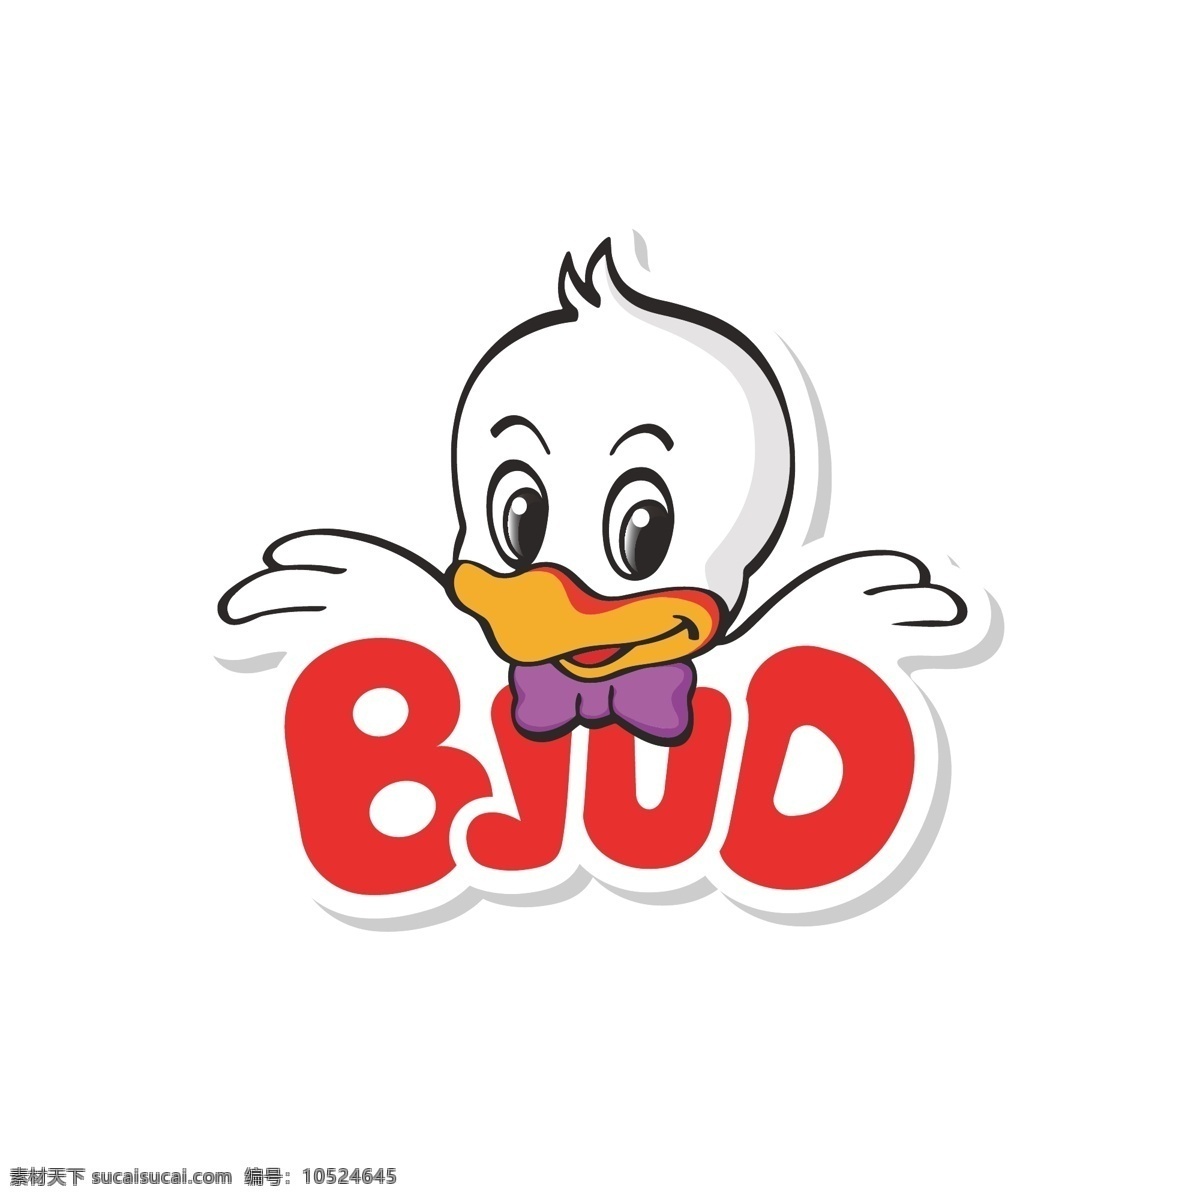 丑小鸭 logo 卡通丑小鸭 卡通鸭子 logo设计